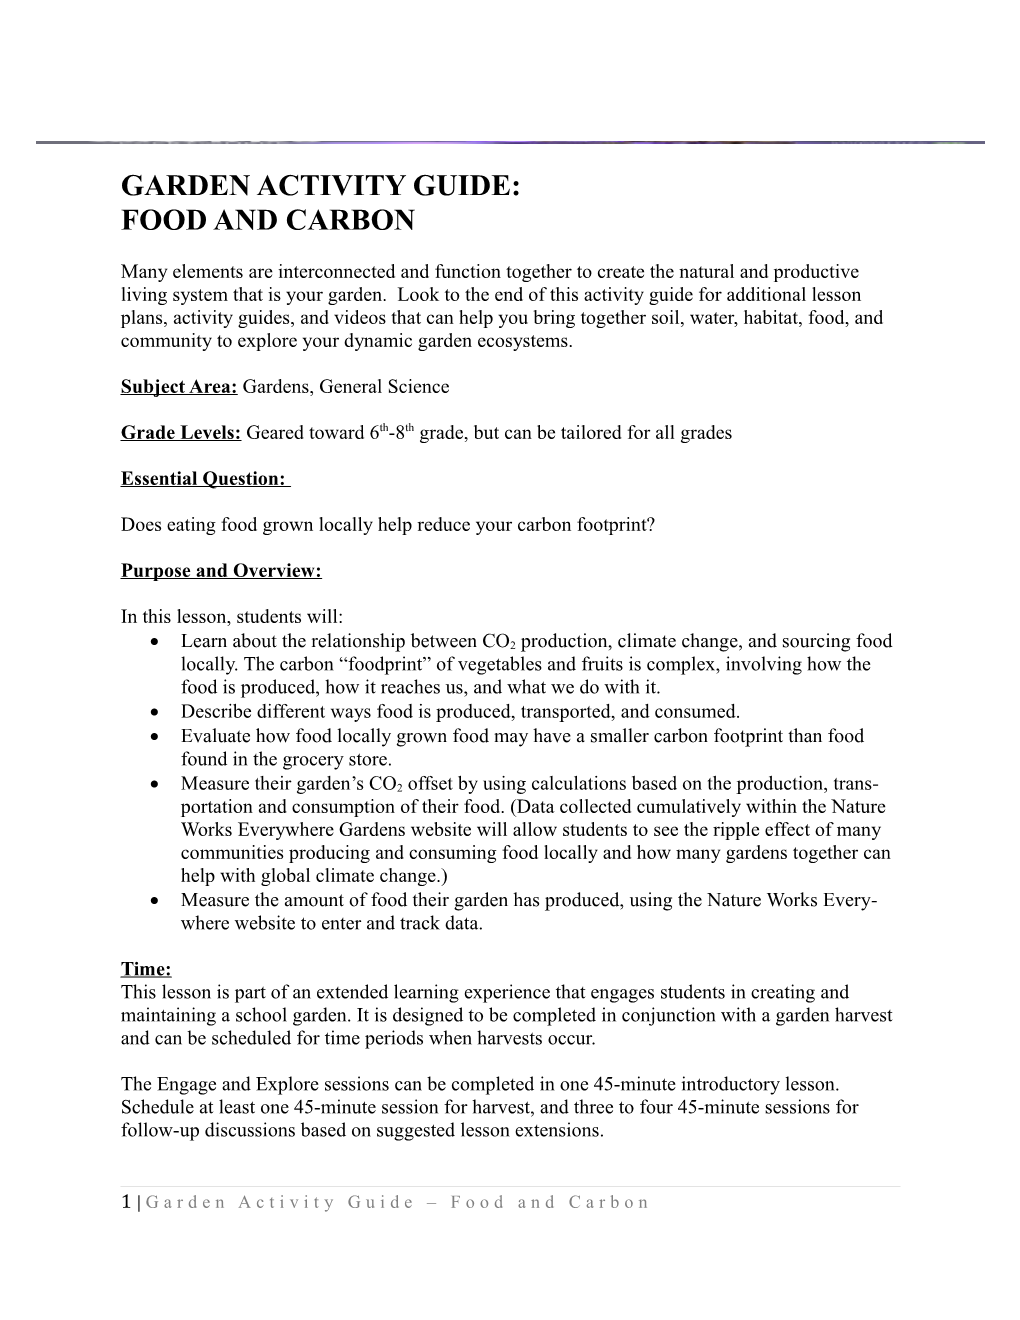 Garden Activity Guide